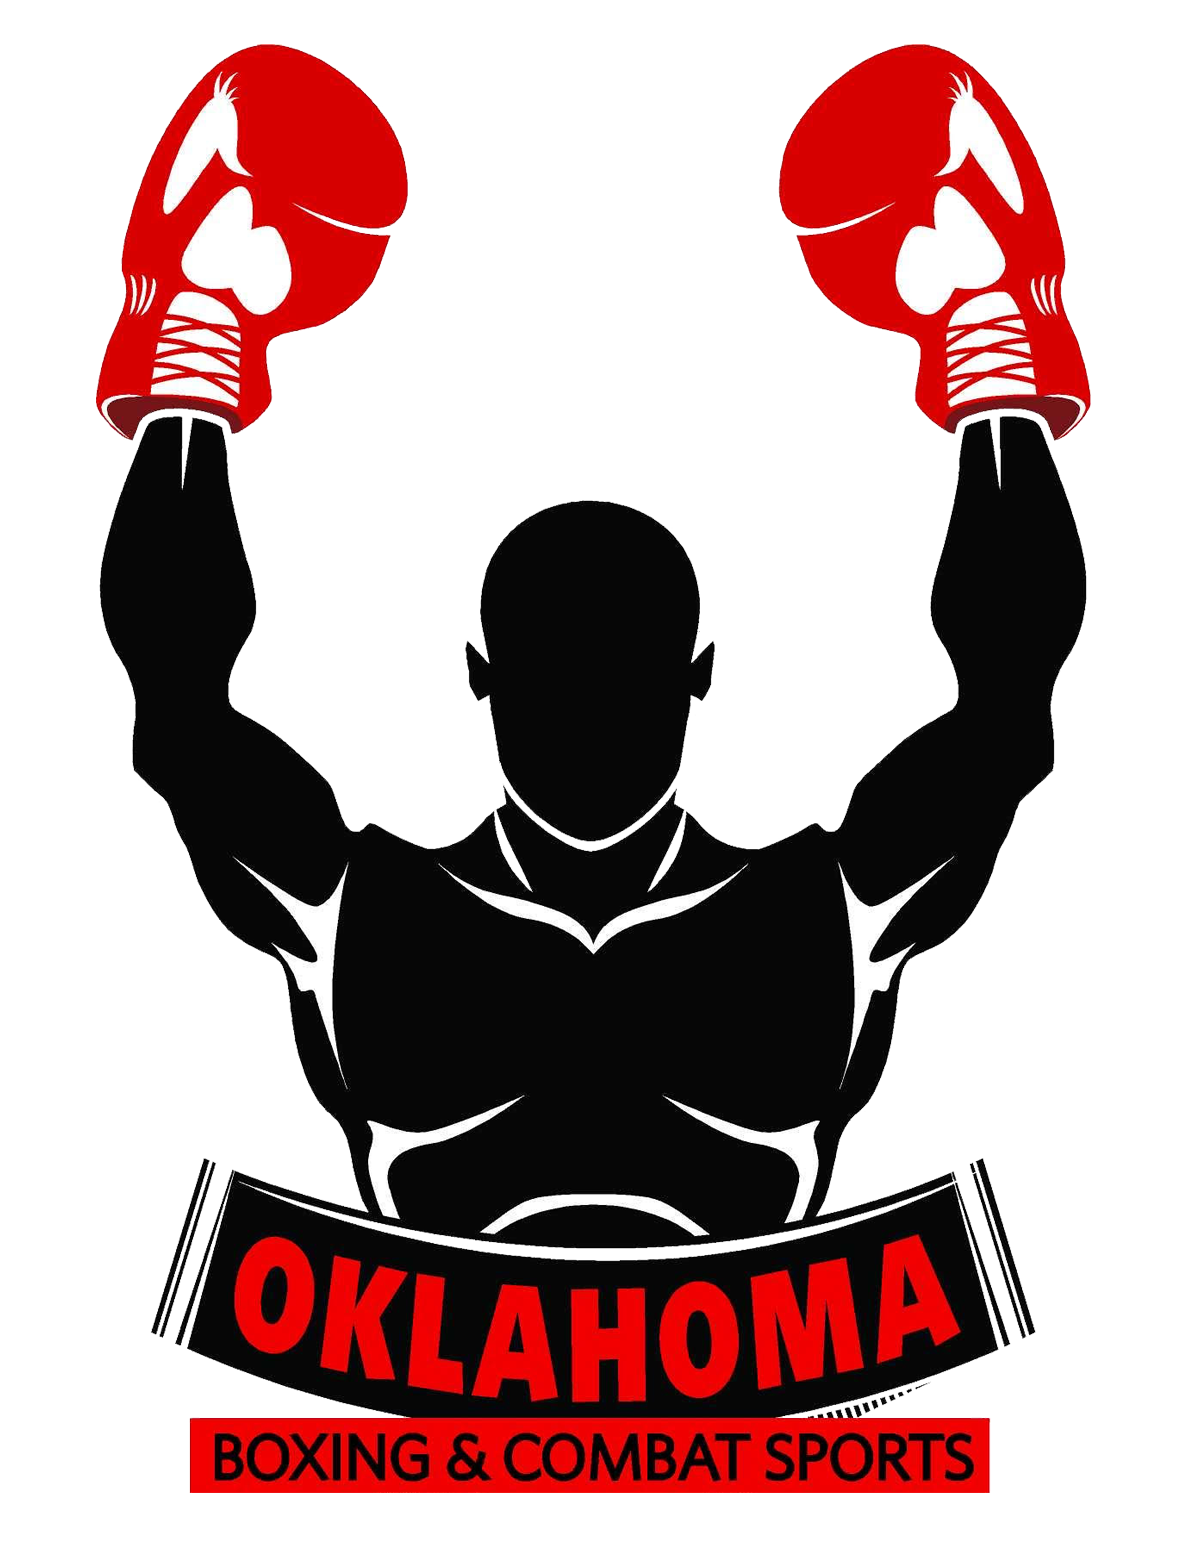 Oklahoma Boxing & Combat Sports